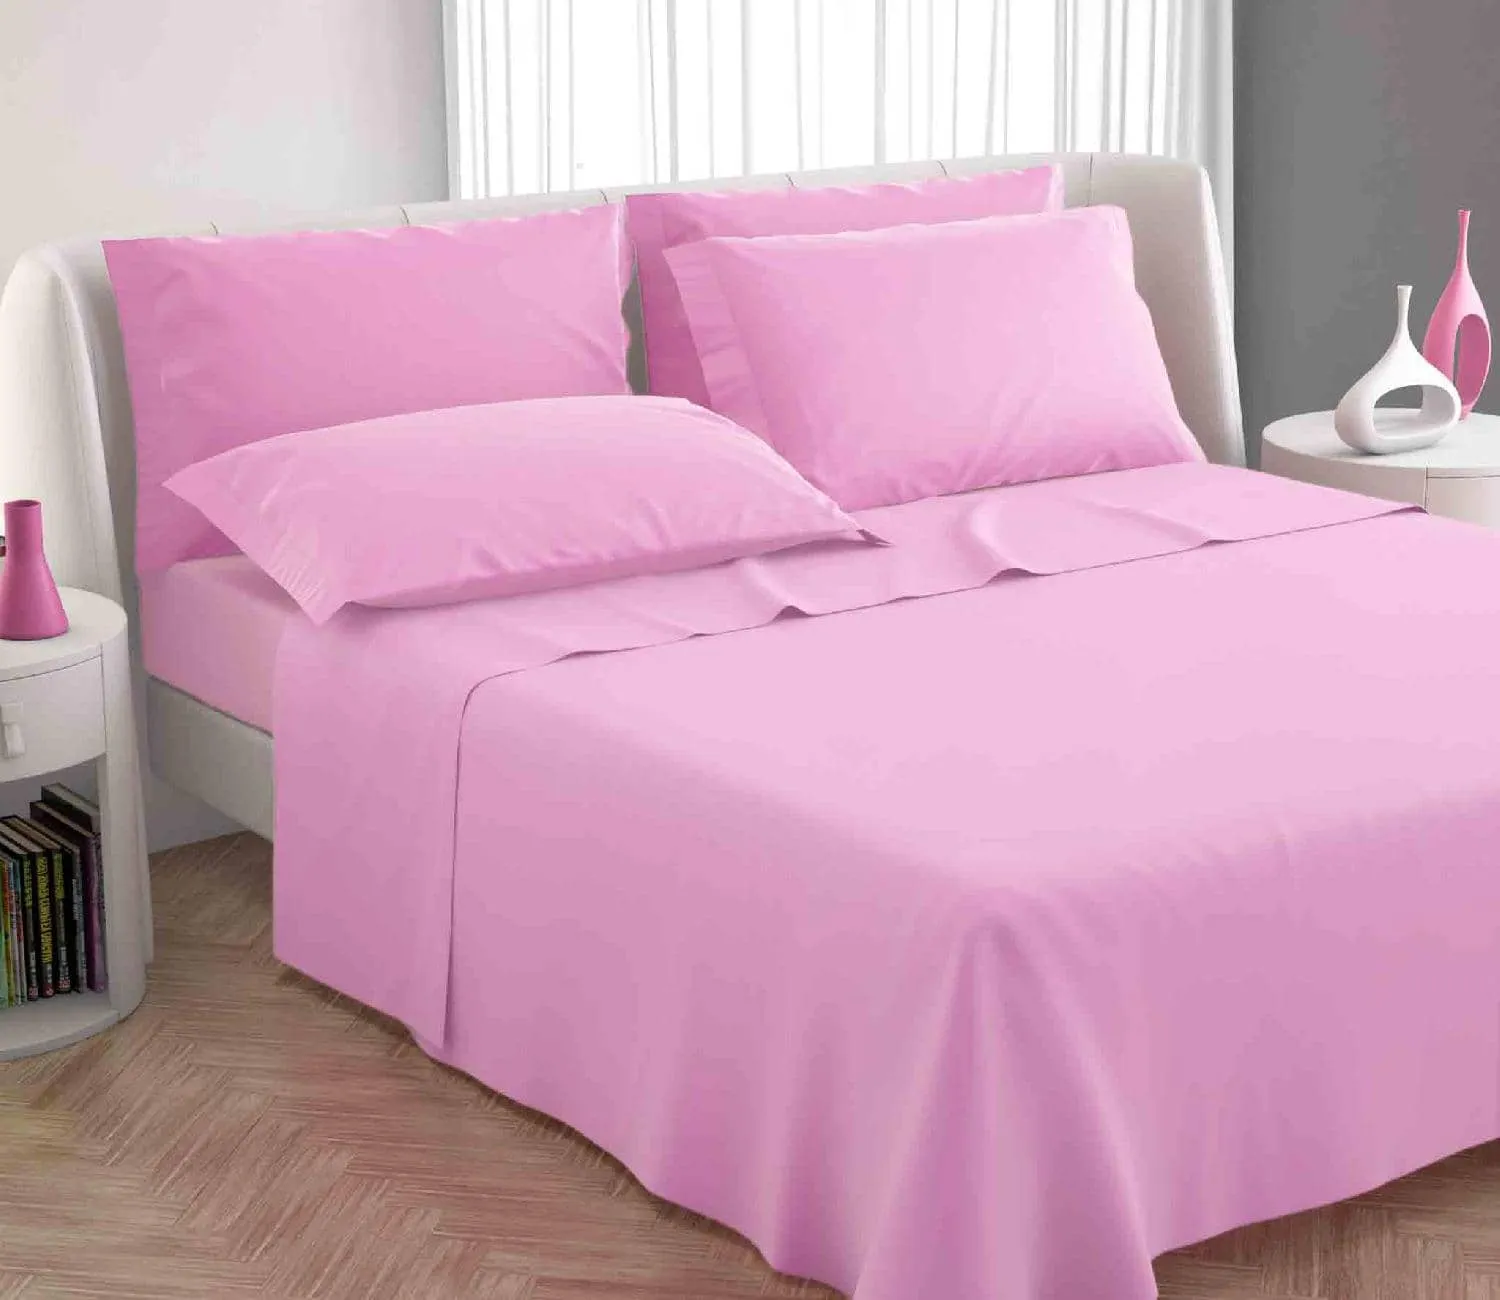 Blanco Raya Completo Letto Singolo in Cotone lenzuolo sopra + sotto con  angoli + federa Tinta unita colore Rosa - Colors